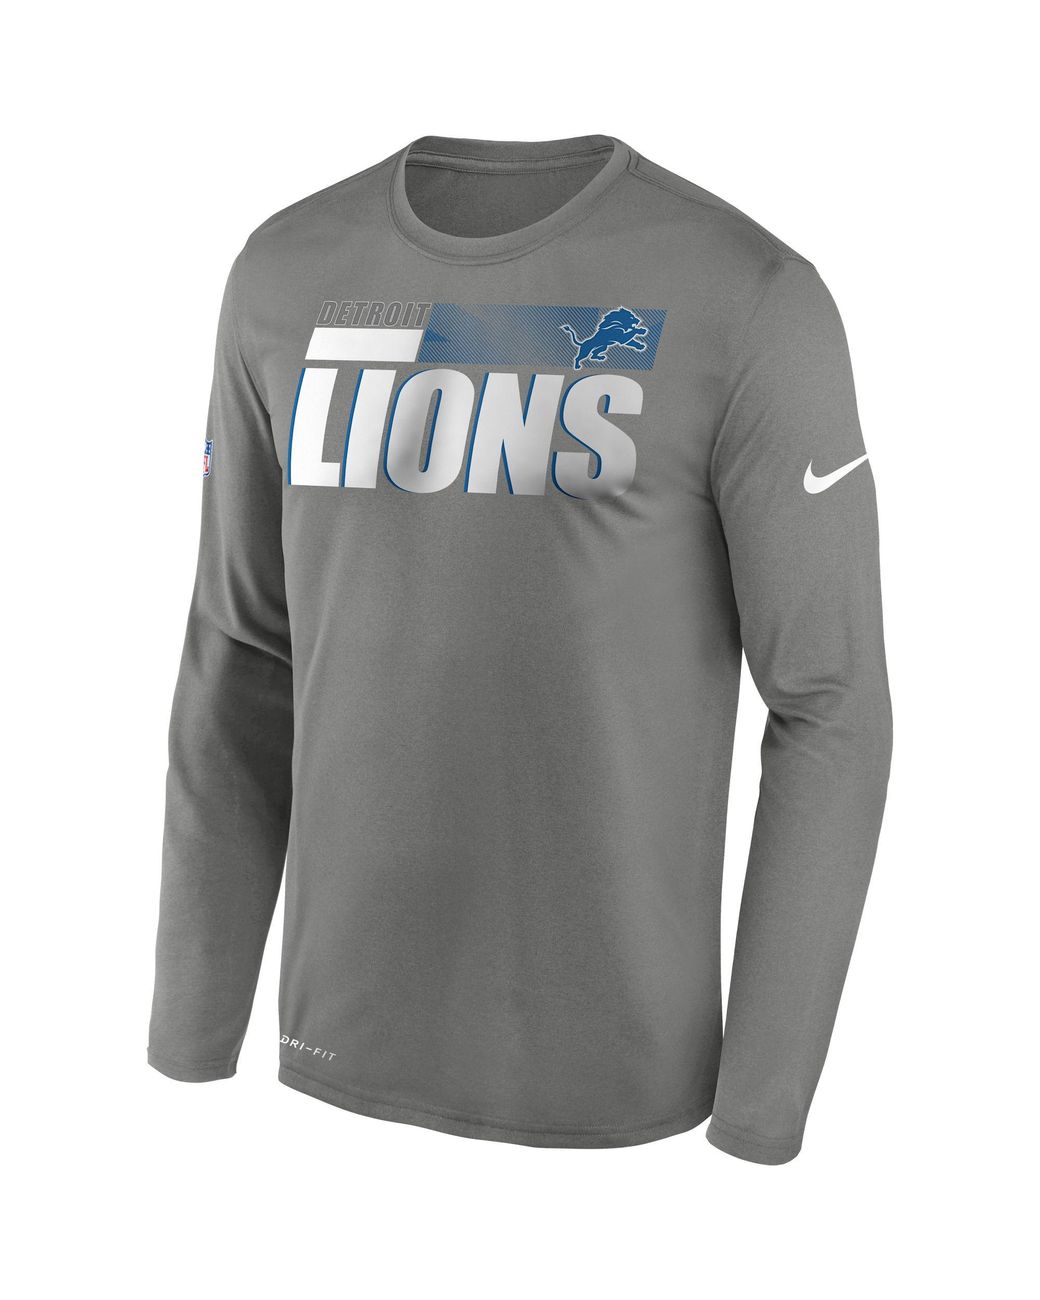 Nike Detroit Lions Sideline Long Sleeve T-shirt in Gray for Men - Lyst